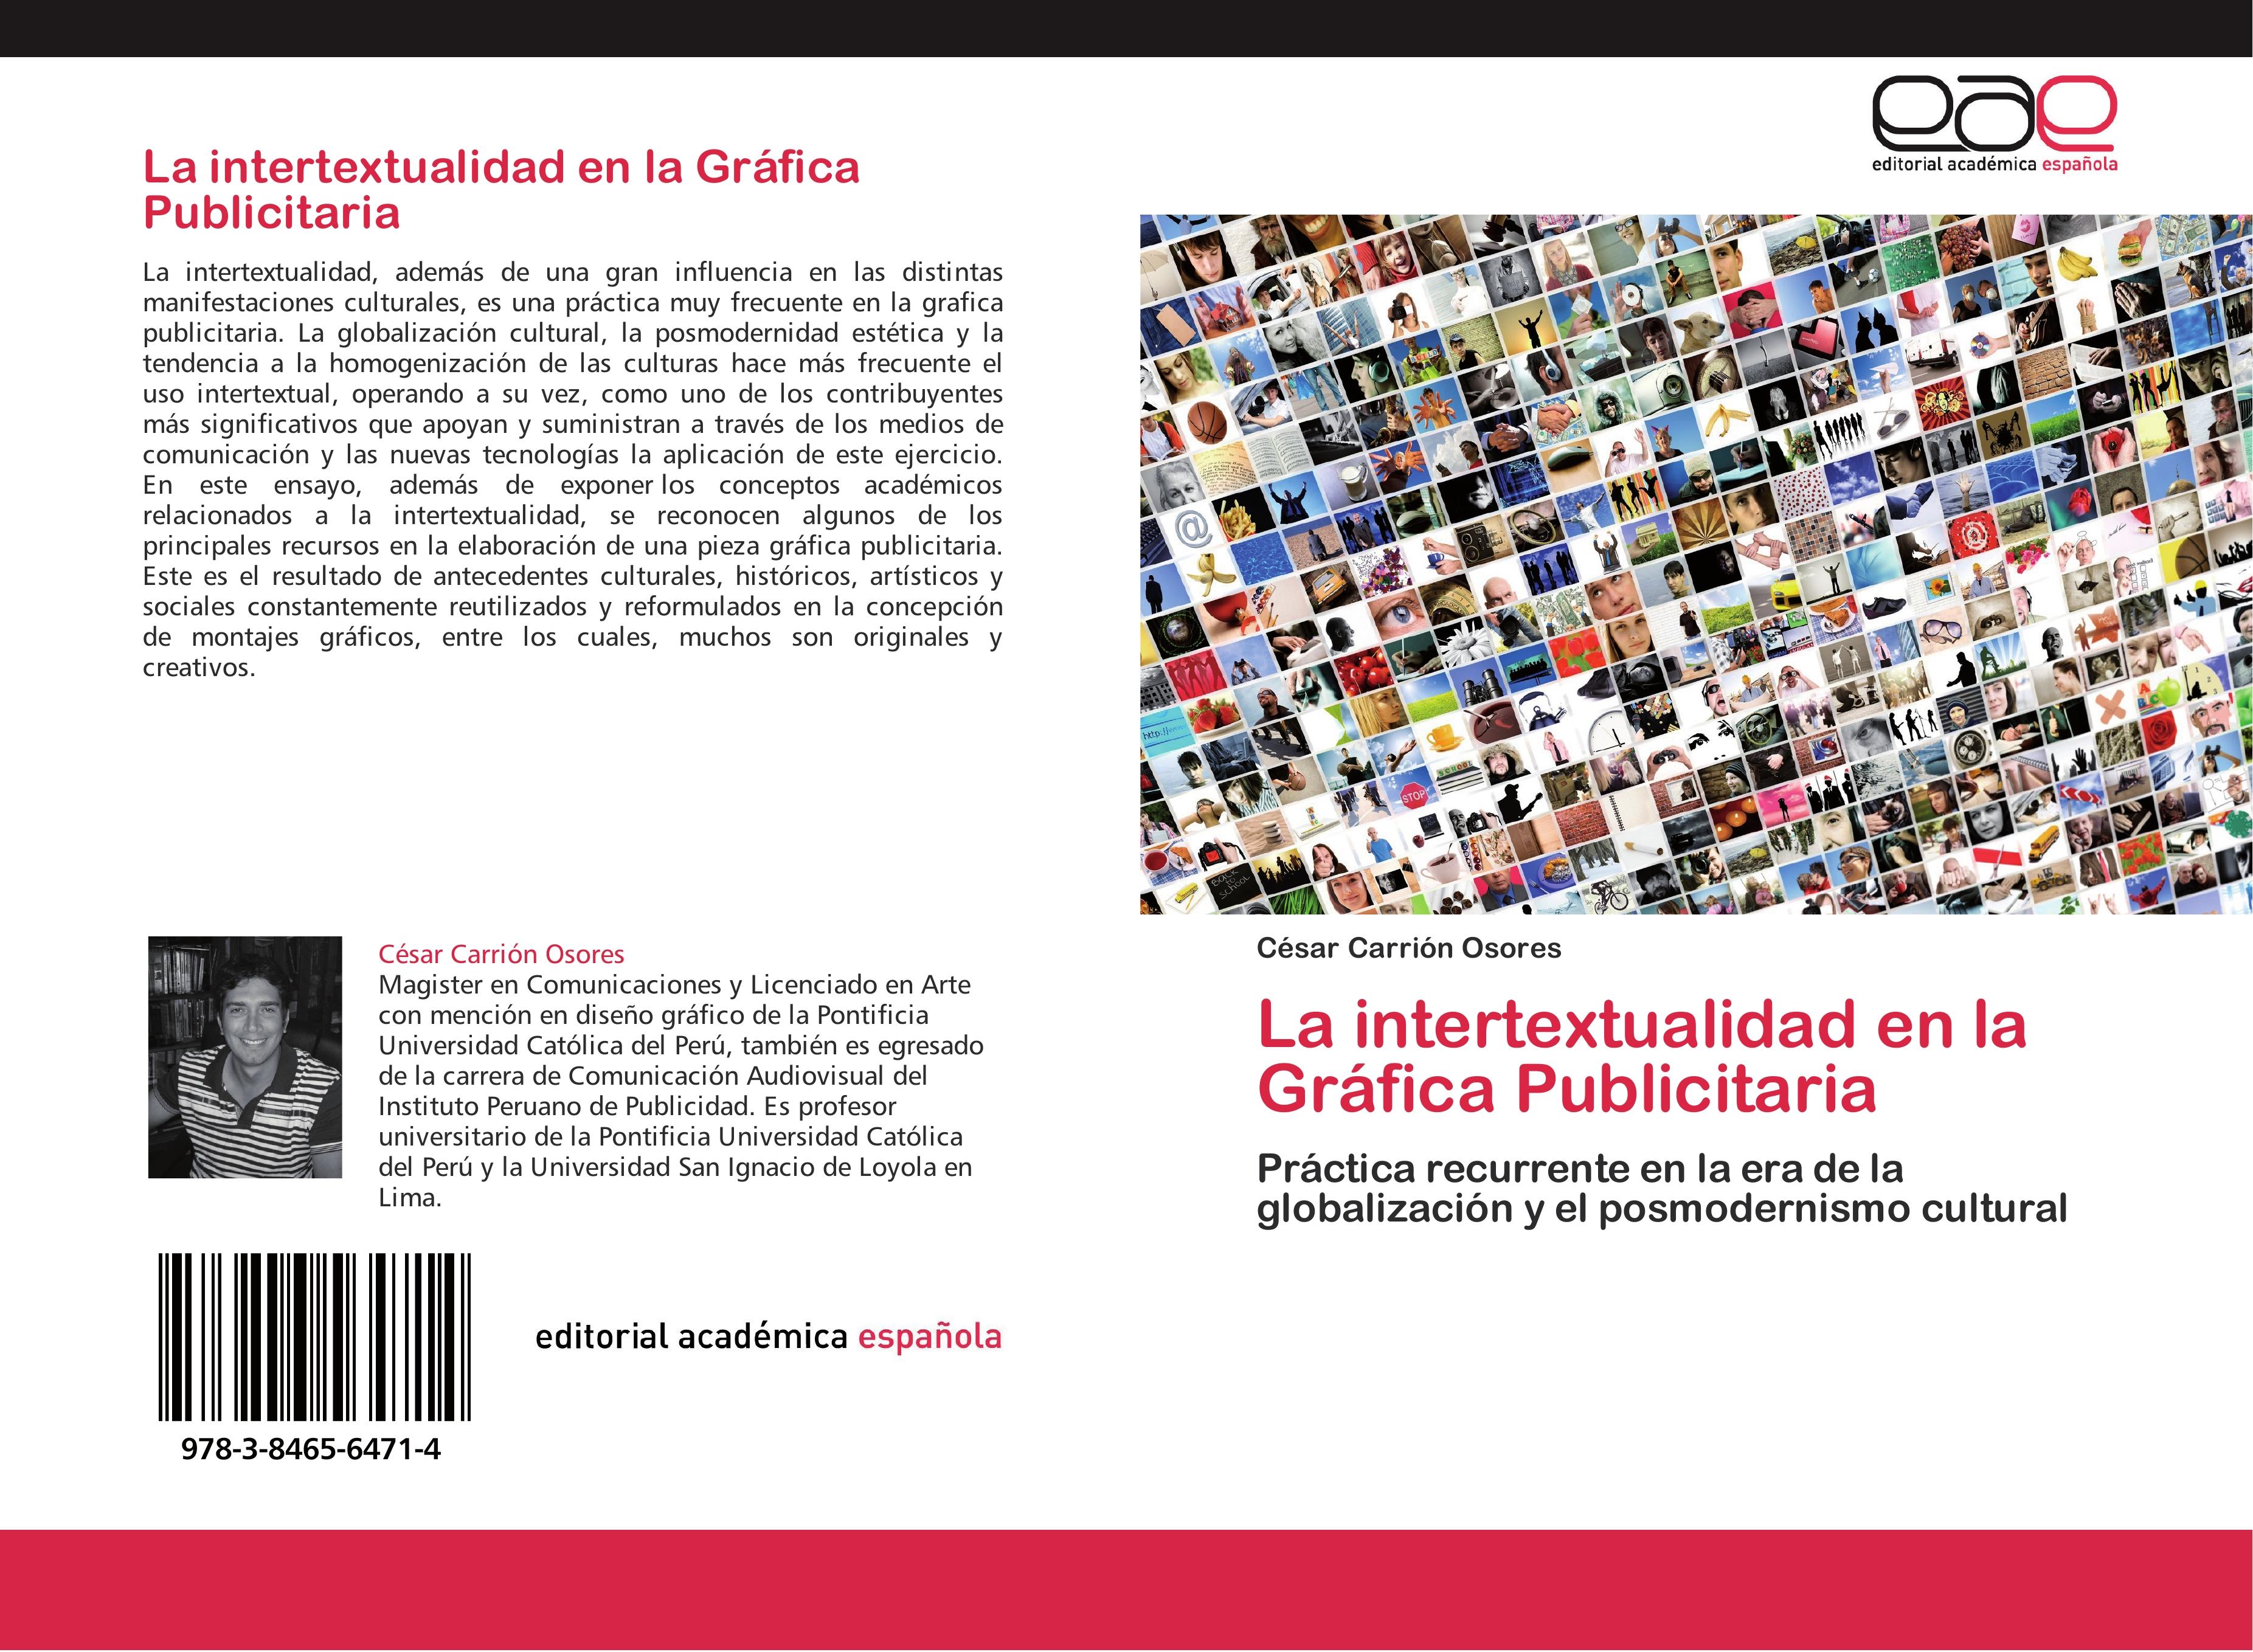 La intertextualidad en la Gráfica Publicitaria - César Carrión Osores